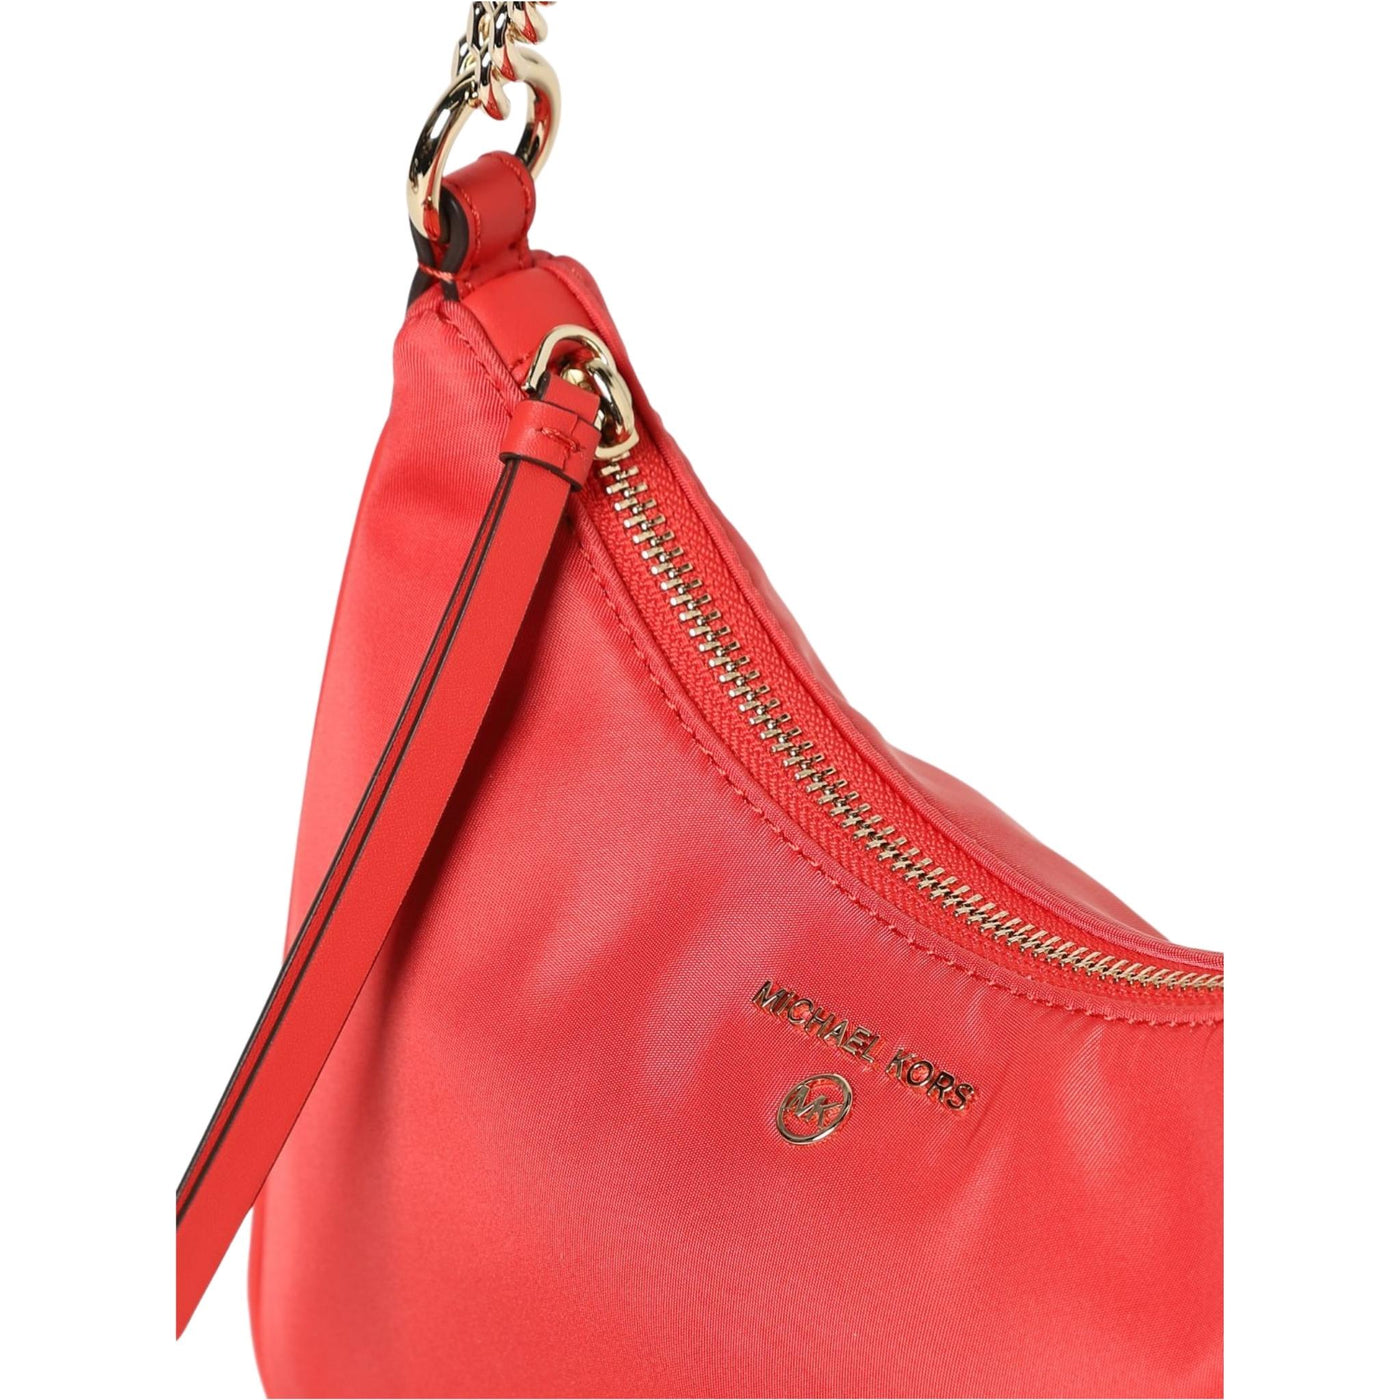 borsa donna michael kors con logo frontale in nylon rossa dettaglio